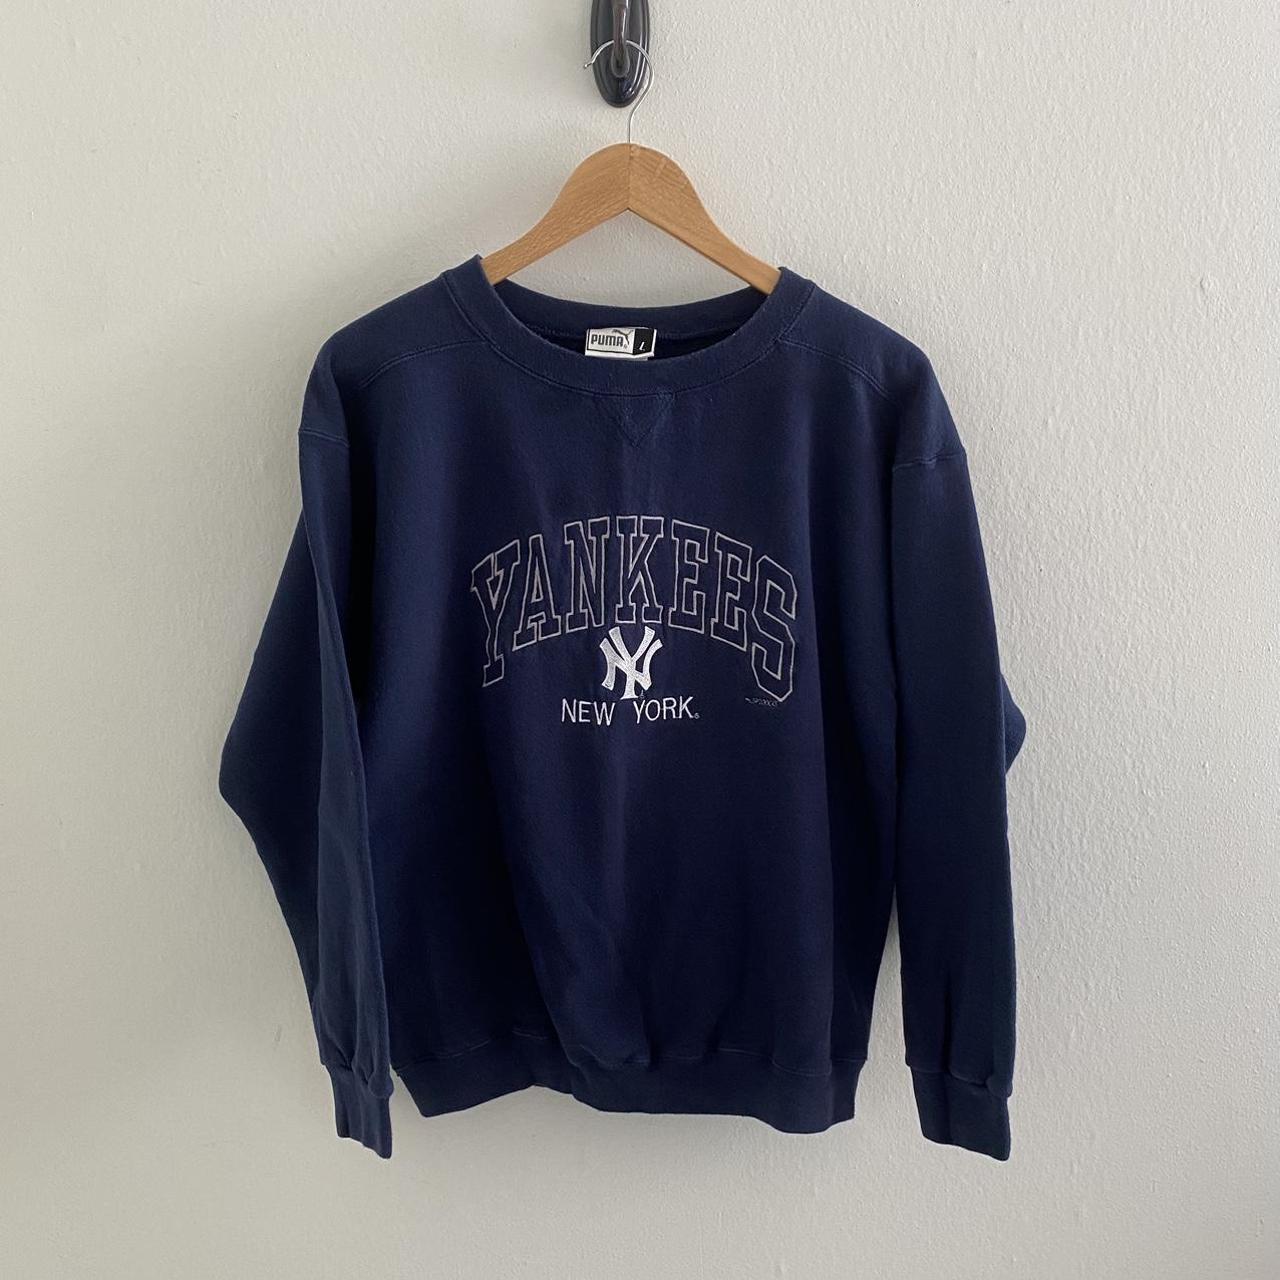 Vintage Puma 🦁 New York Yankees ⚾️ Sweatshirt 😅... - Depop